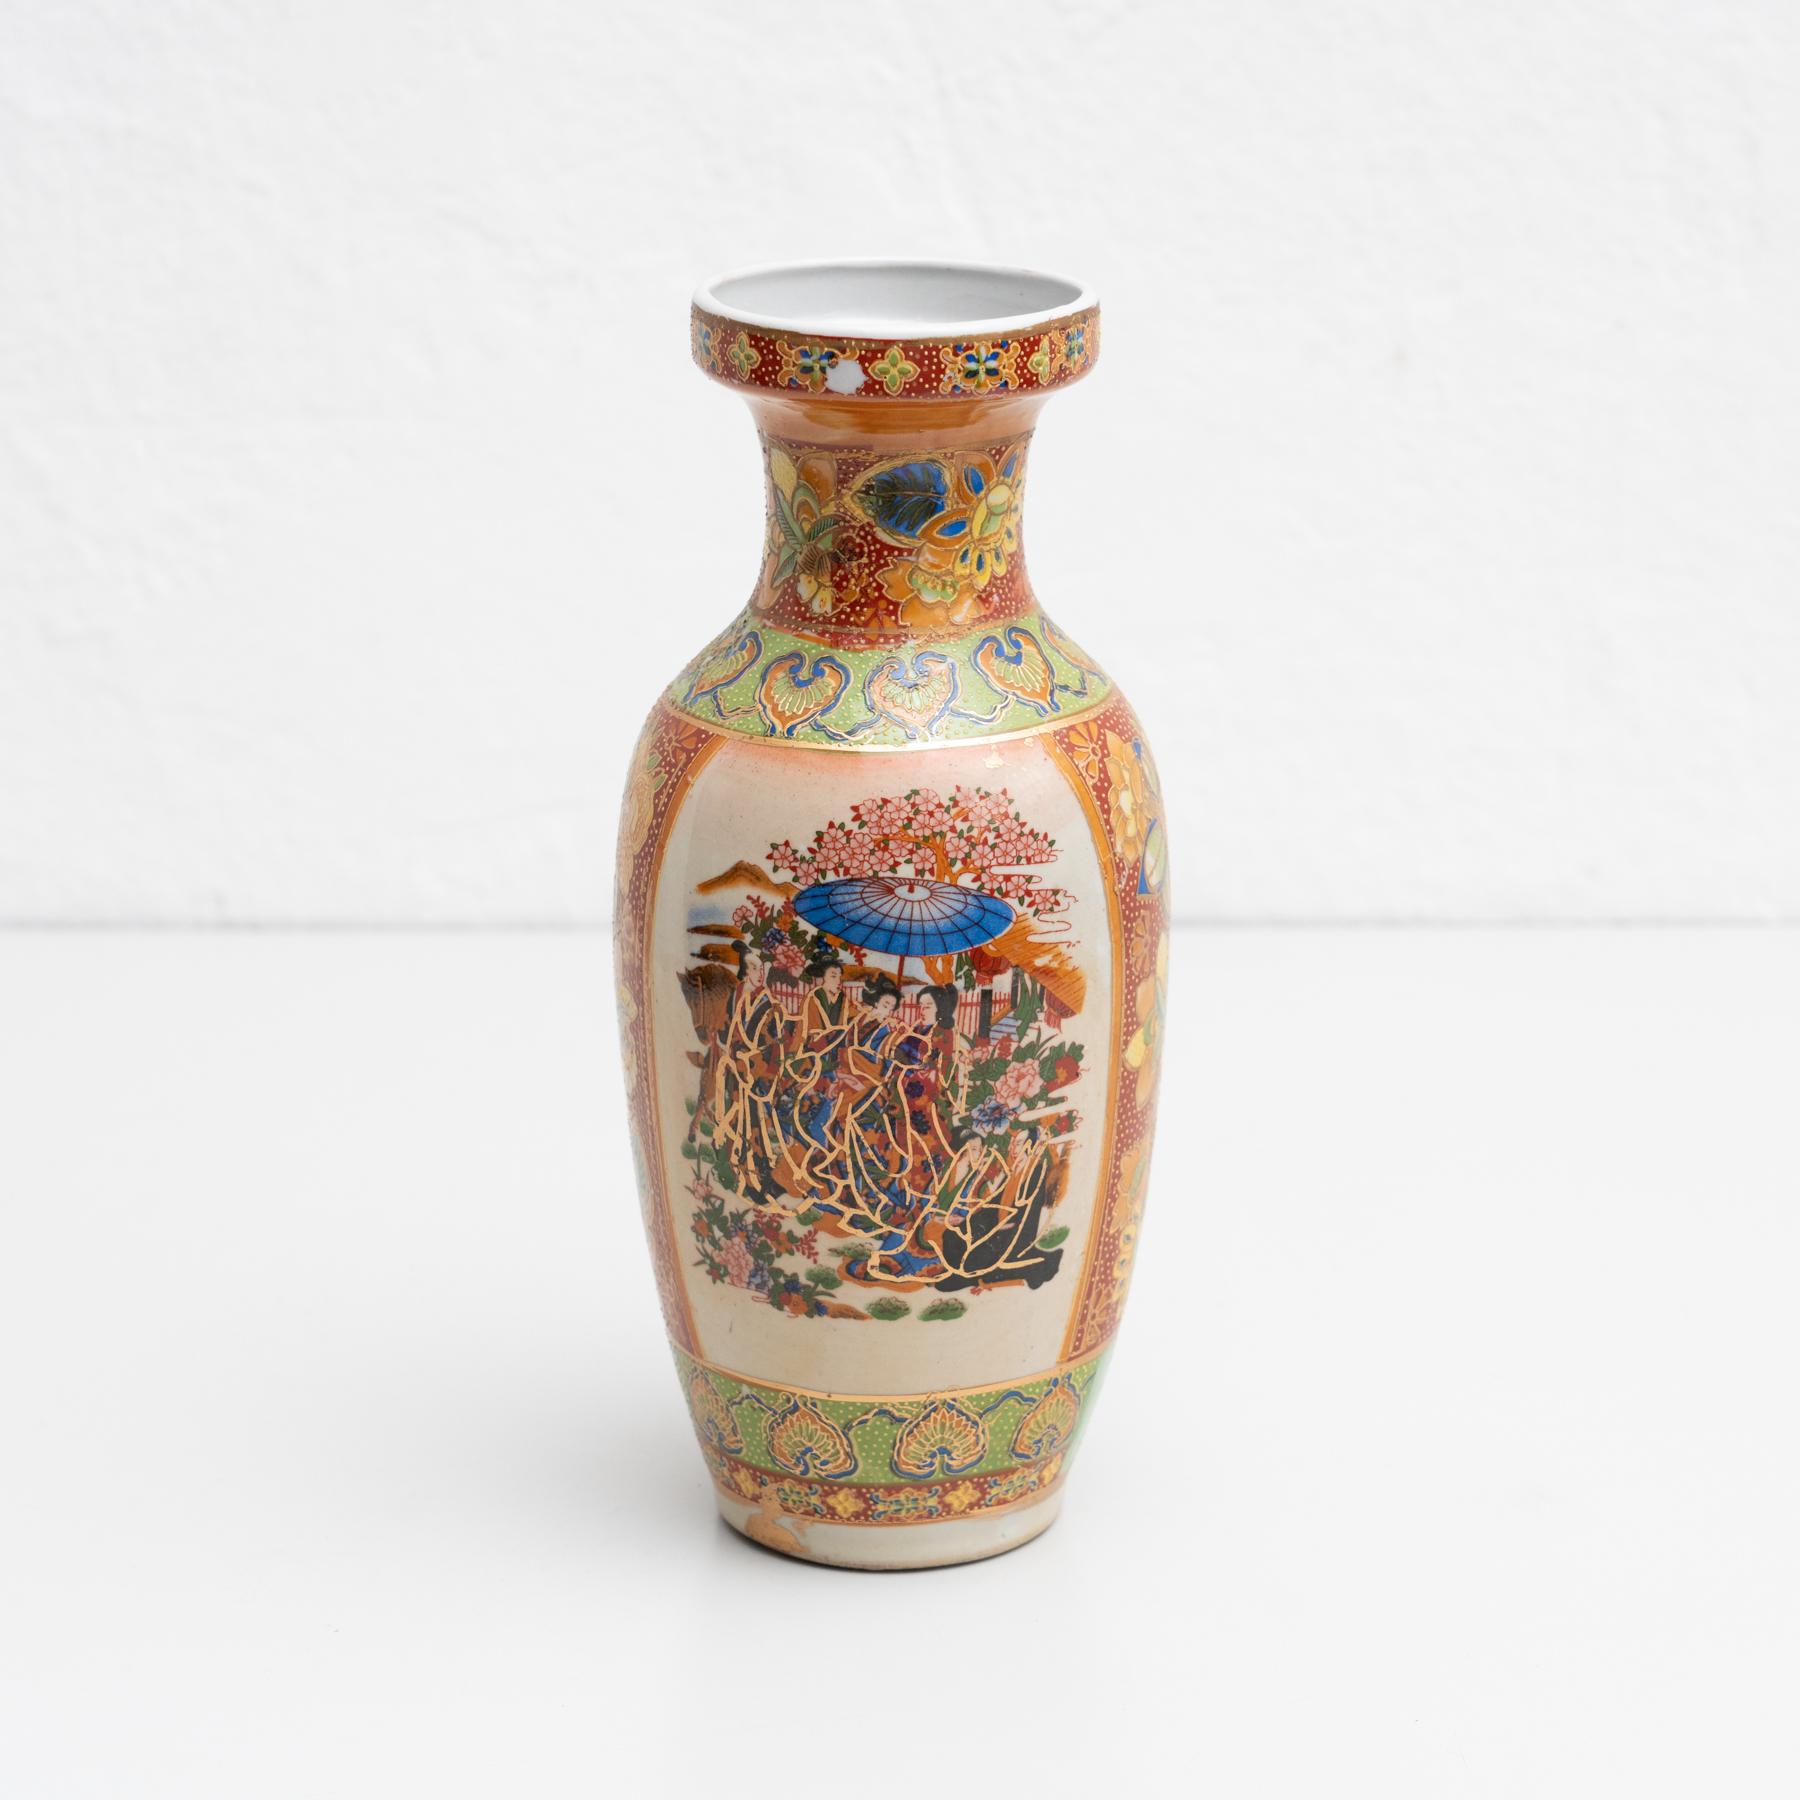 Asiatische Keramikvase, handbemalt. Die Vorderseite ist mit einer traditionellen Szene verziert.

Hergestellt von einem unbekannten Hersteller aus Asien, um 1950.

Originaler Zustand mit geringen alters- und gebrauchsbedingten